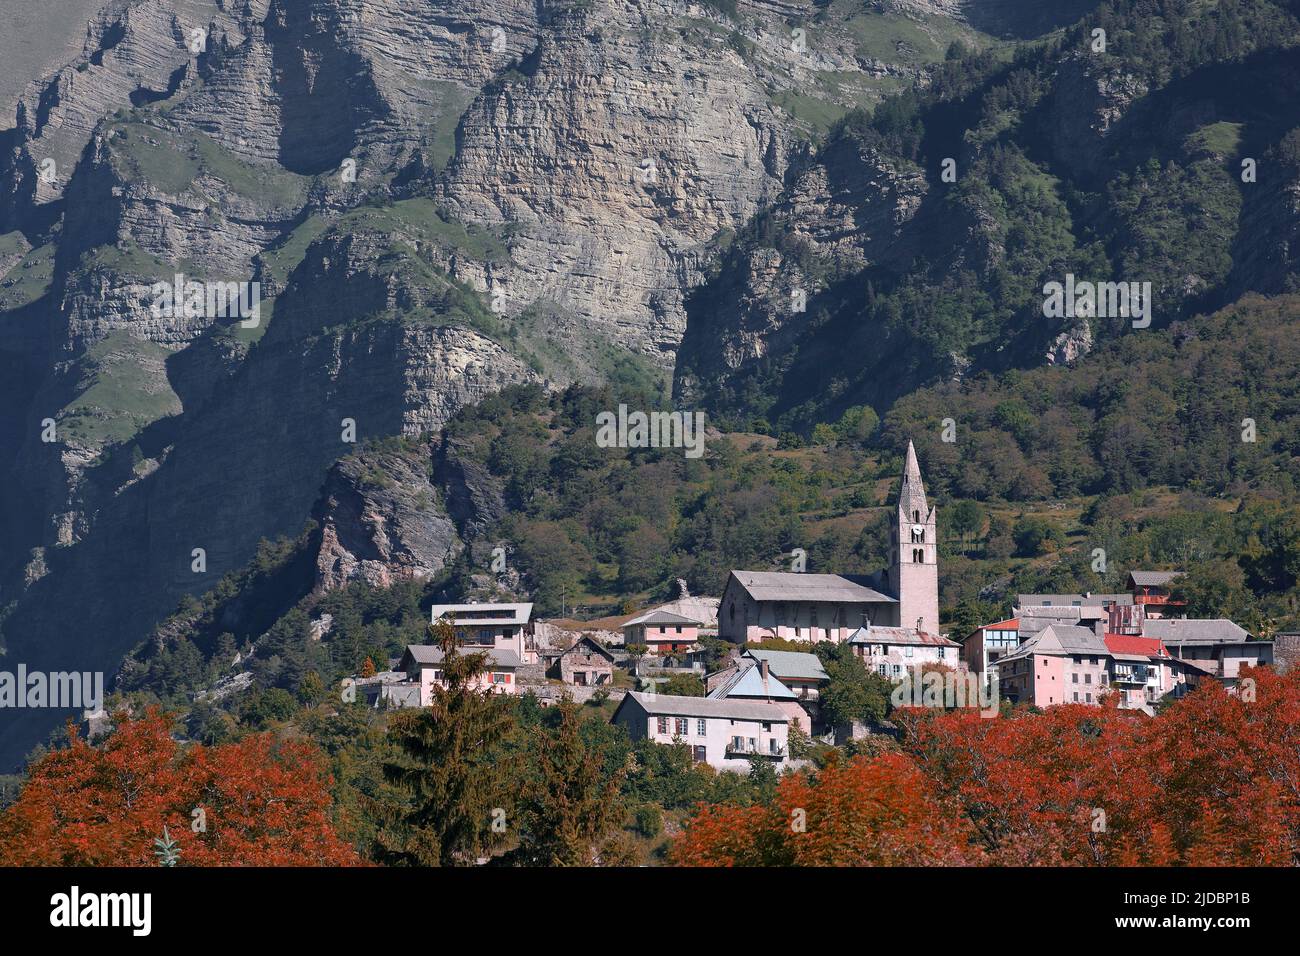 France, Hautes-Alpes Châteauroux-les-Alpes, Hameau de Saint-Marcellin mountain village Stock Photo